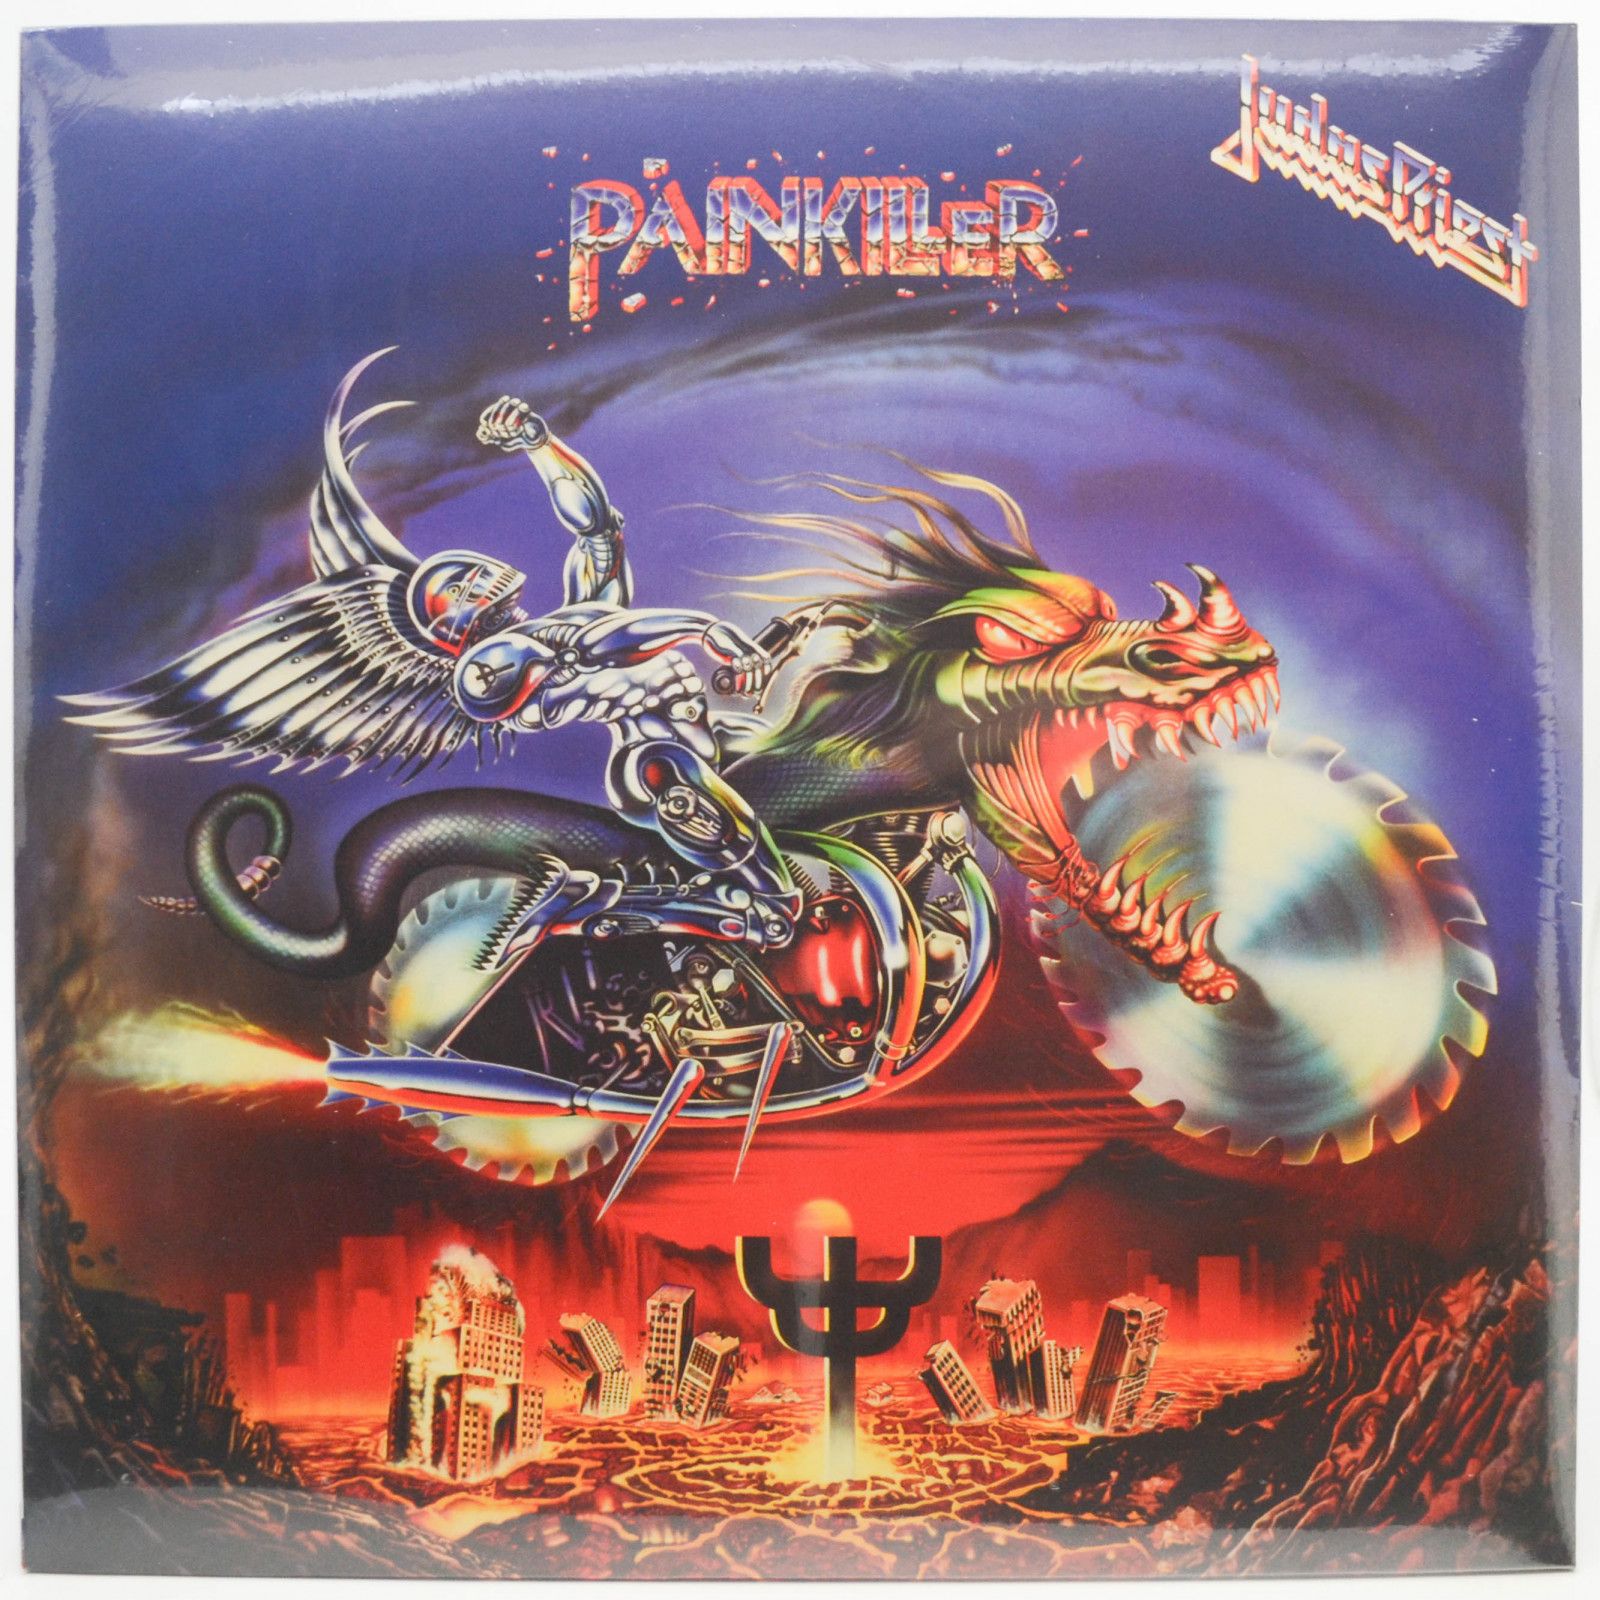 Judas Priest — Painkiller (UK), 1990